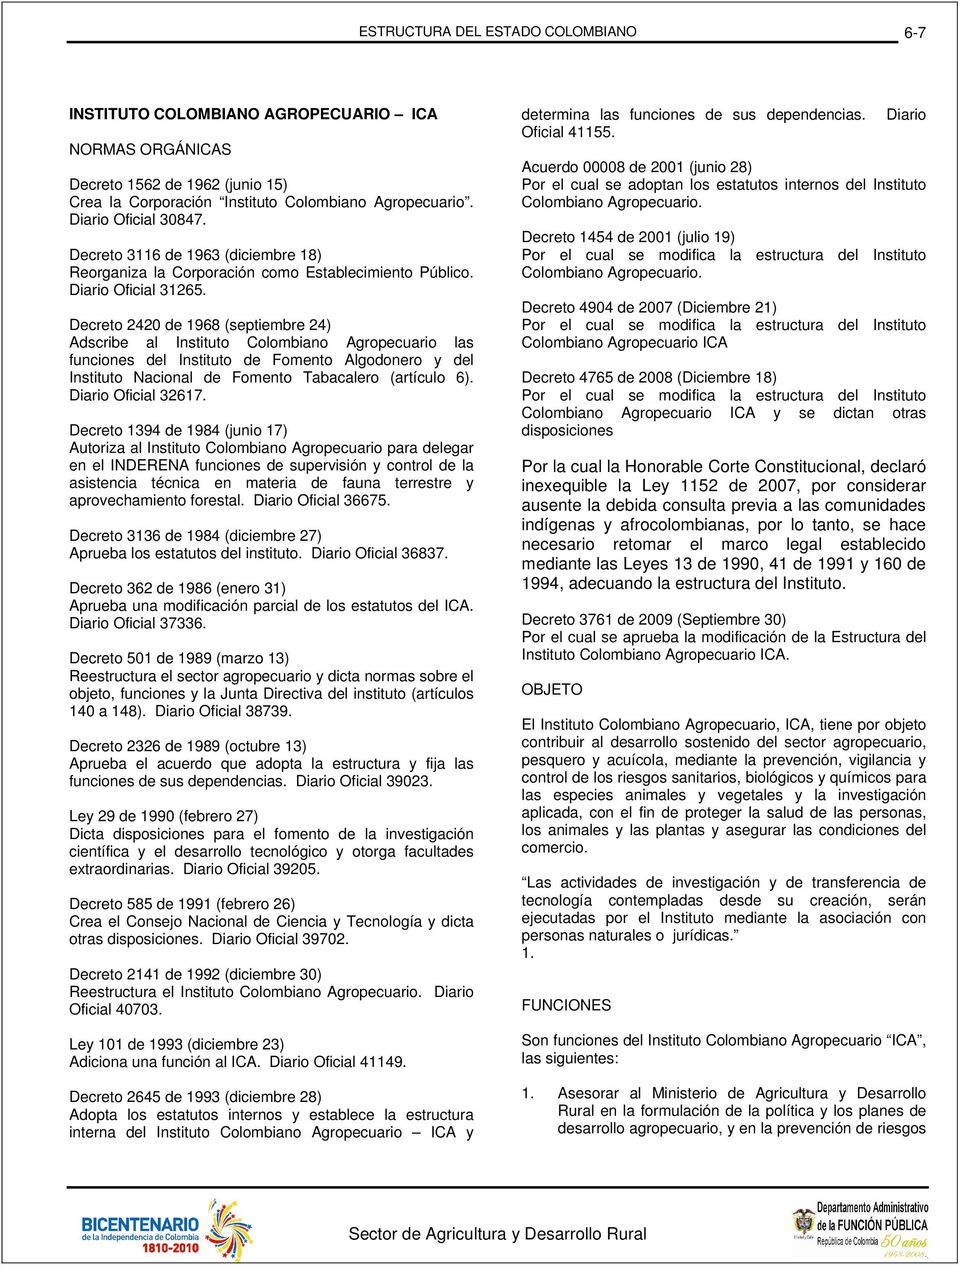 Decreto 2420 de 1968 (septiembre 24) Adscribe al Instituto Colombiano Agropecuario las funciones del Instituto de Fomento Algodonero y del Instituto Nacional de Fomento Tabacalero (artículo 6).